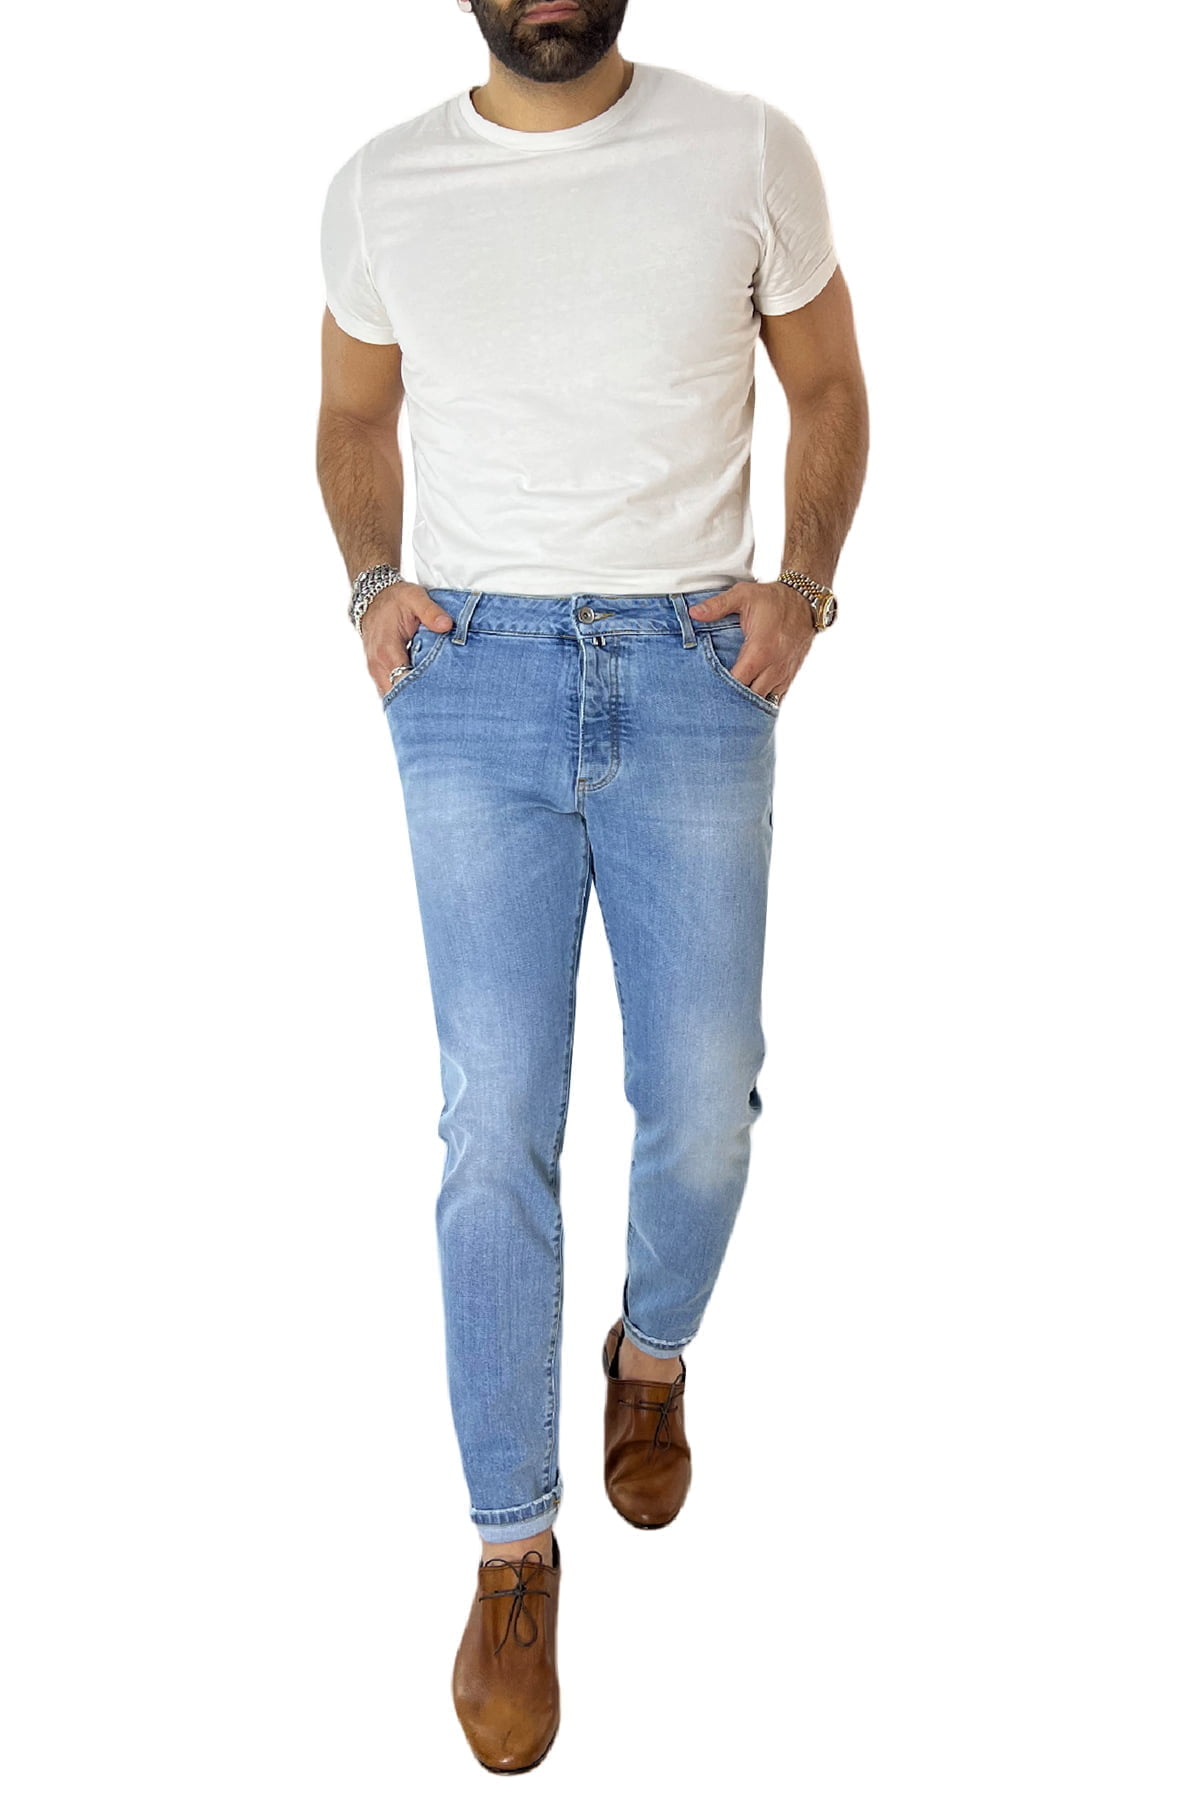 leASOS in Cotone da Uomo colore Blu Jeans affusolati lavaggio chiaro con fondo distrutto Uomo Abbigliamento da Jeans da Jeans attillati 